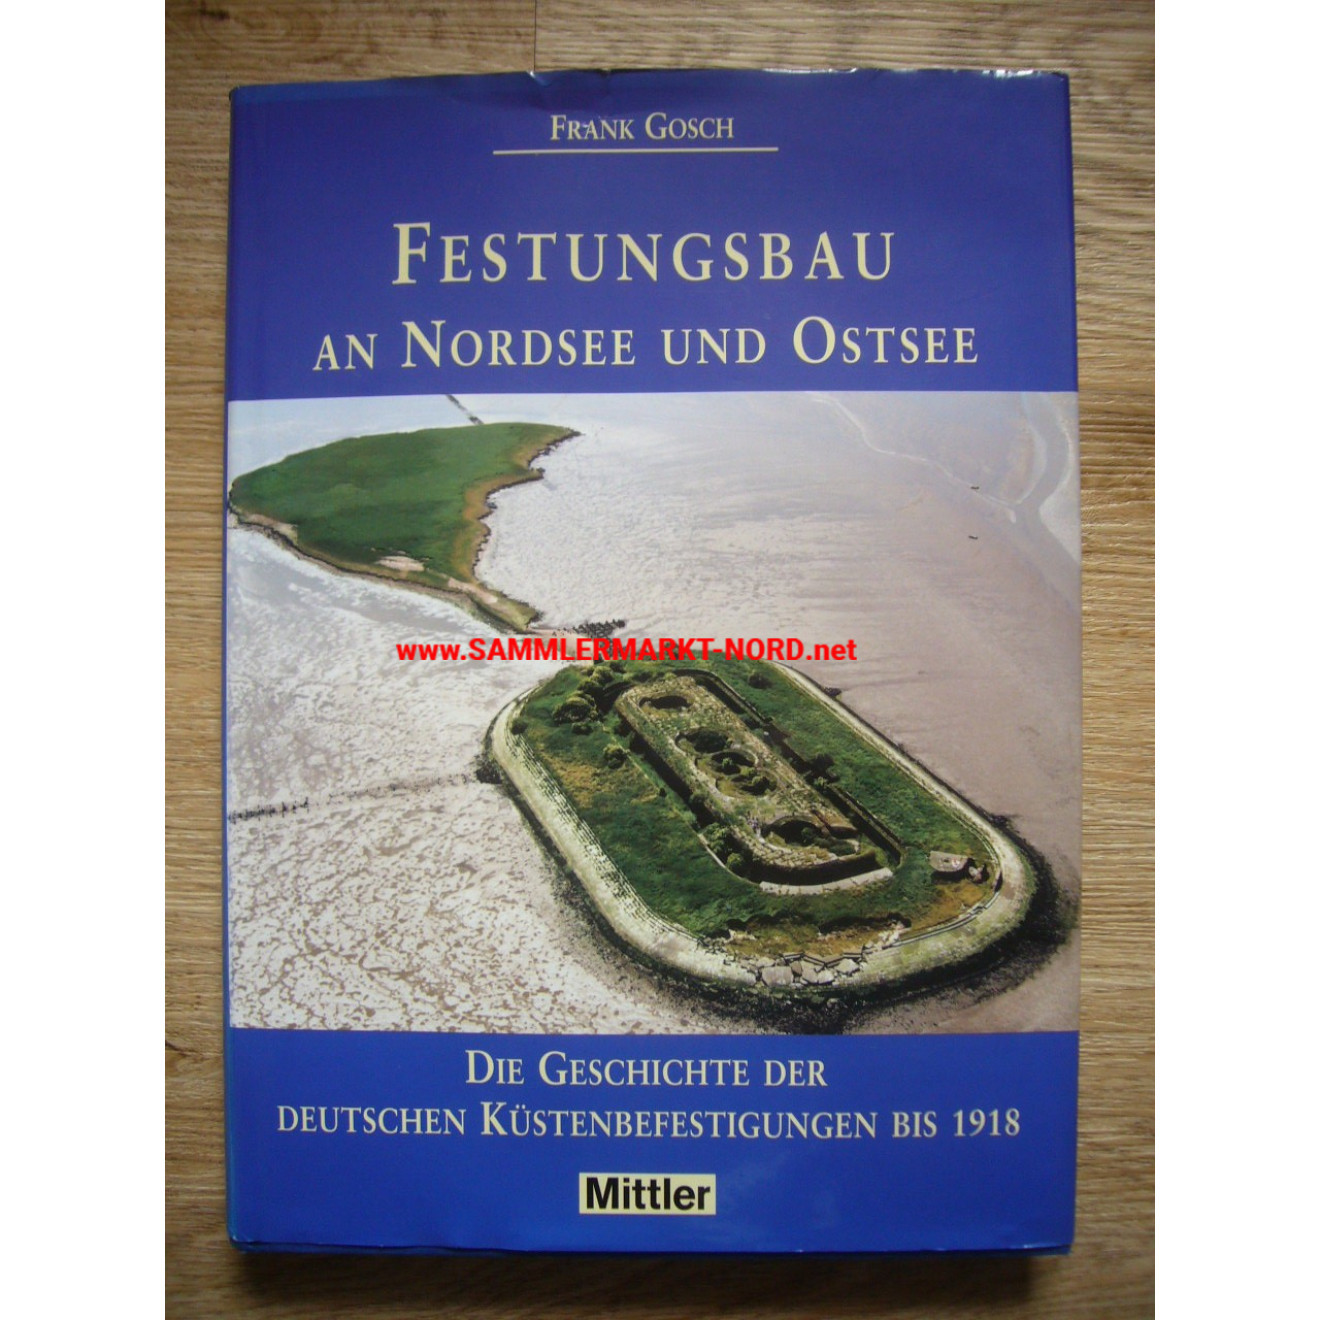 Festungsbau an der Nordsee und Ostsee - Geschichte der deutschen Küstenbefestigungen bis 1918